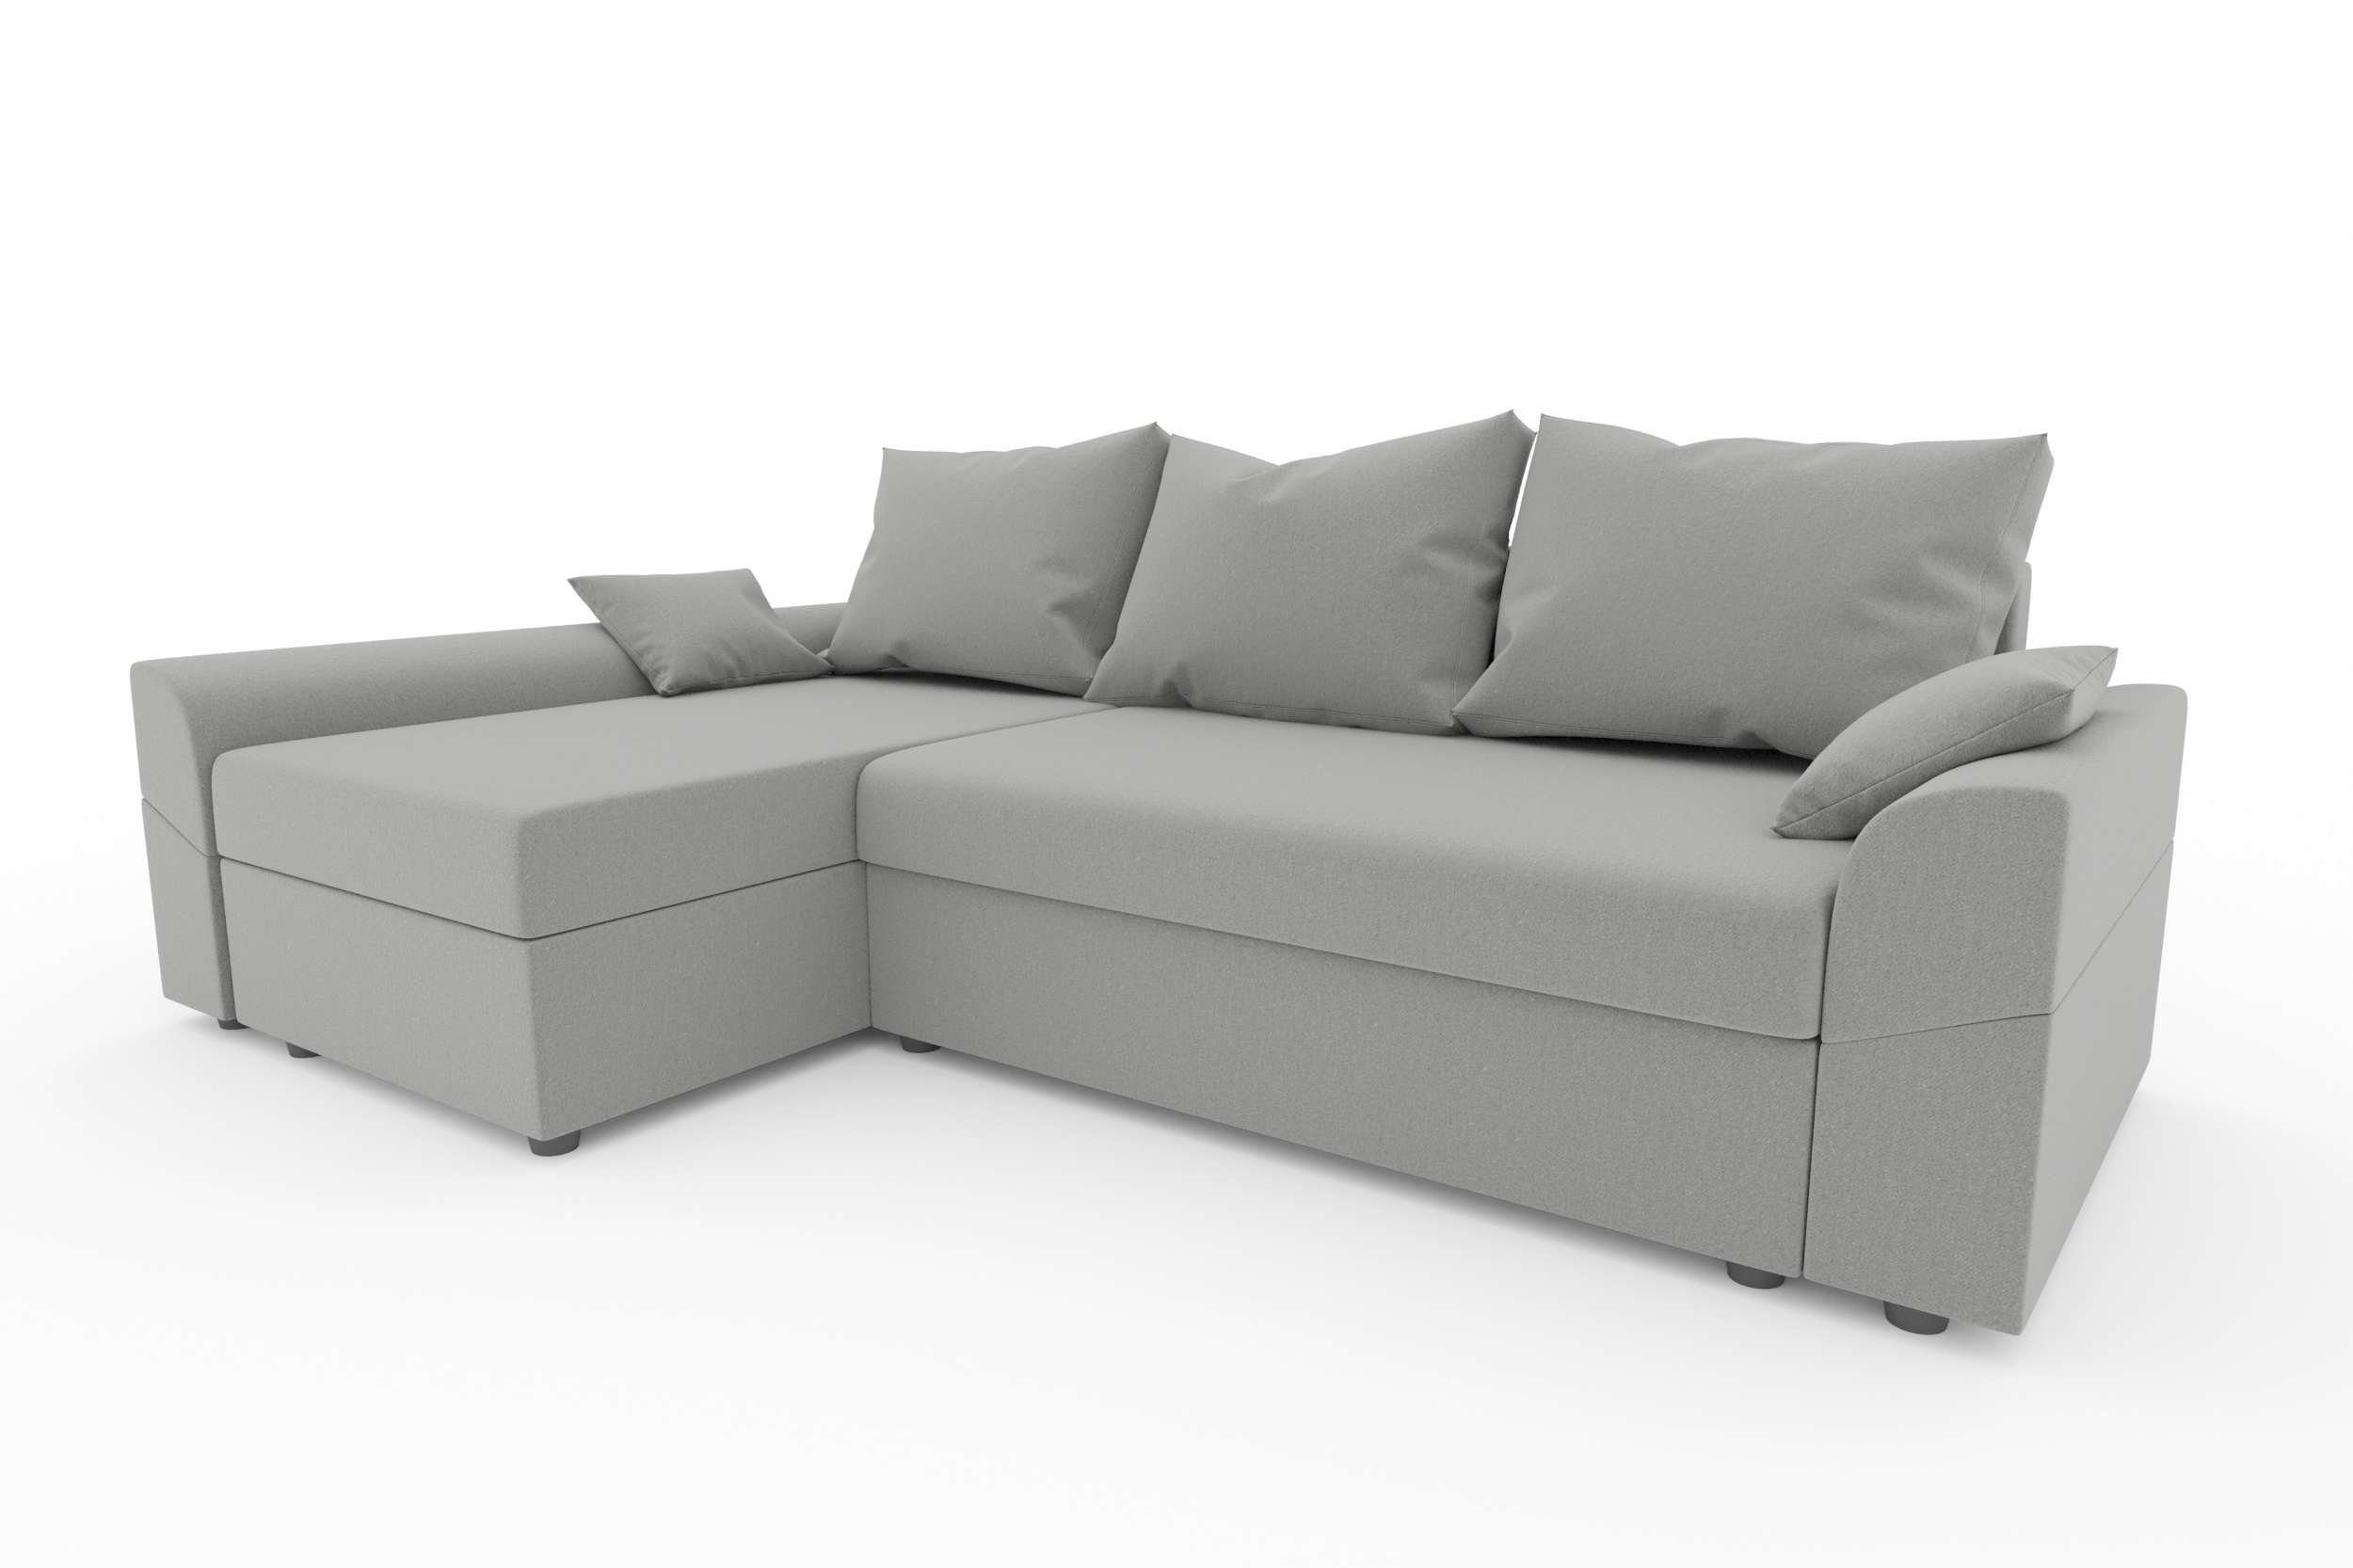 Bettfunktion, mit Eckcouch, Bettkasten, Ecksofa Sitzkomfort, Modern mit L-Form, Sofa, Design Aurora, Stylefy